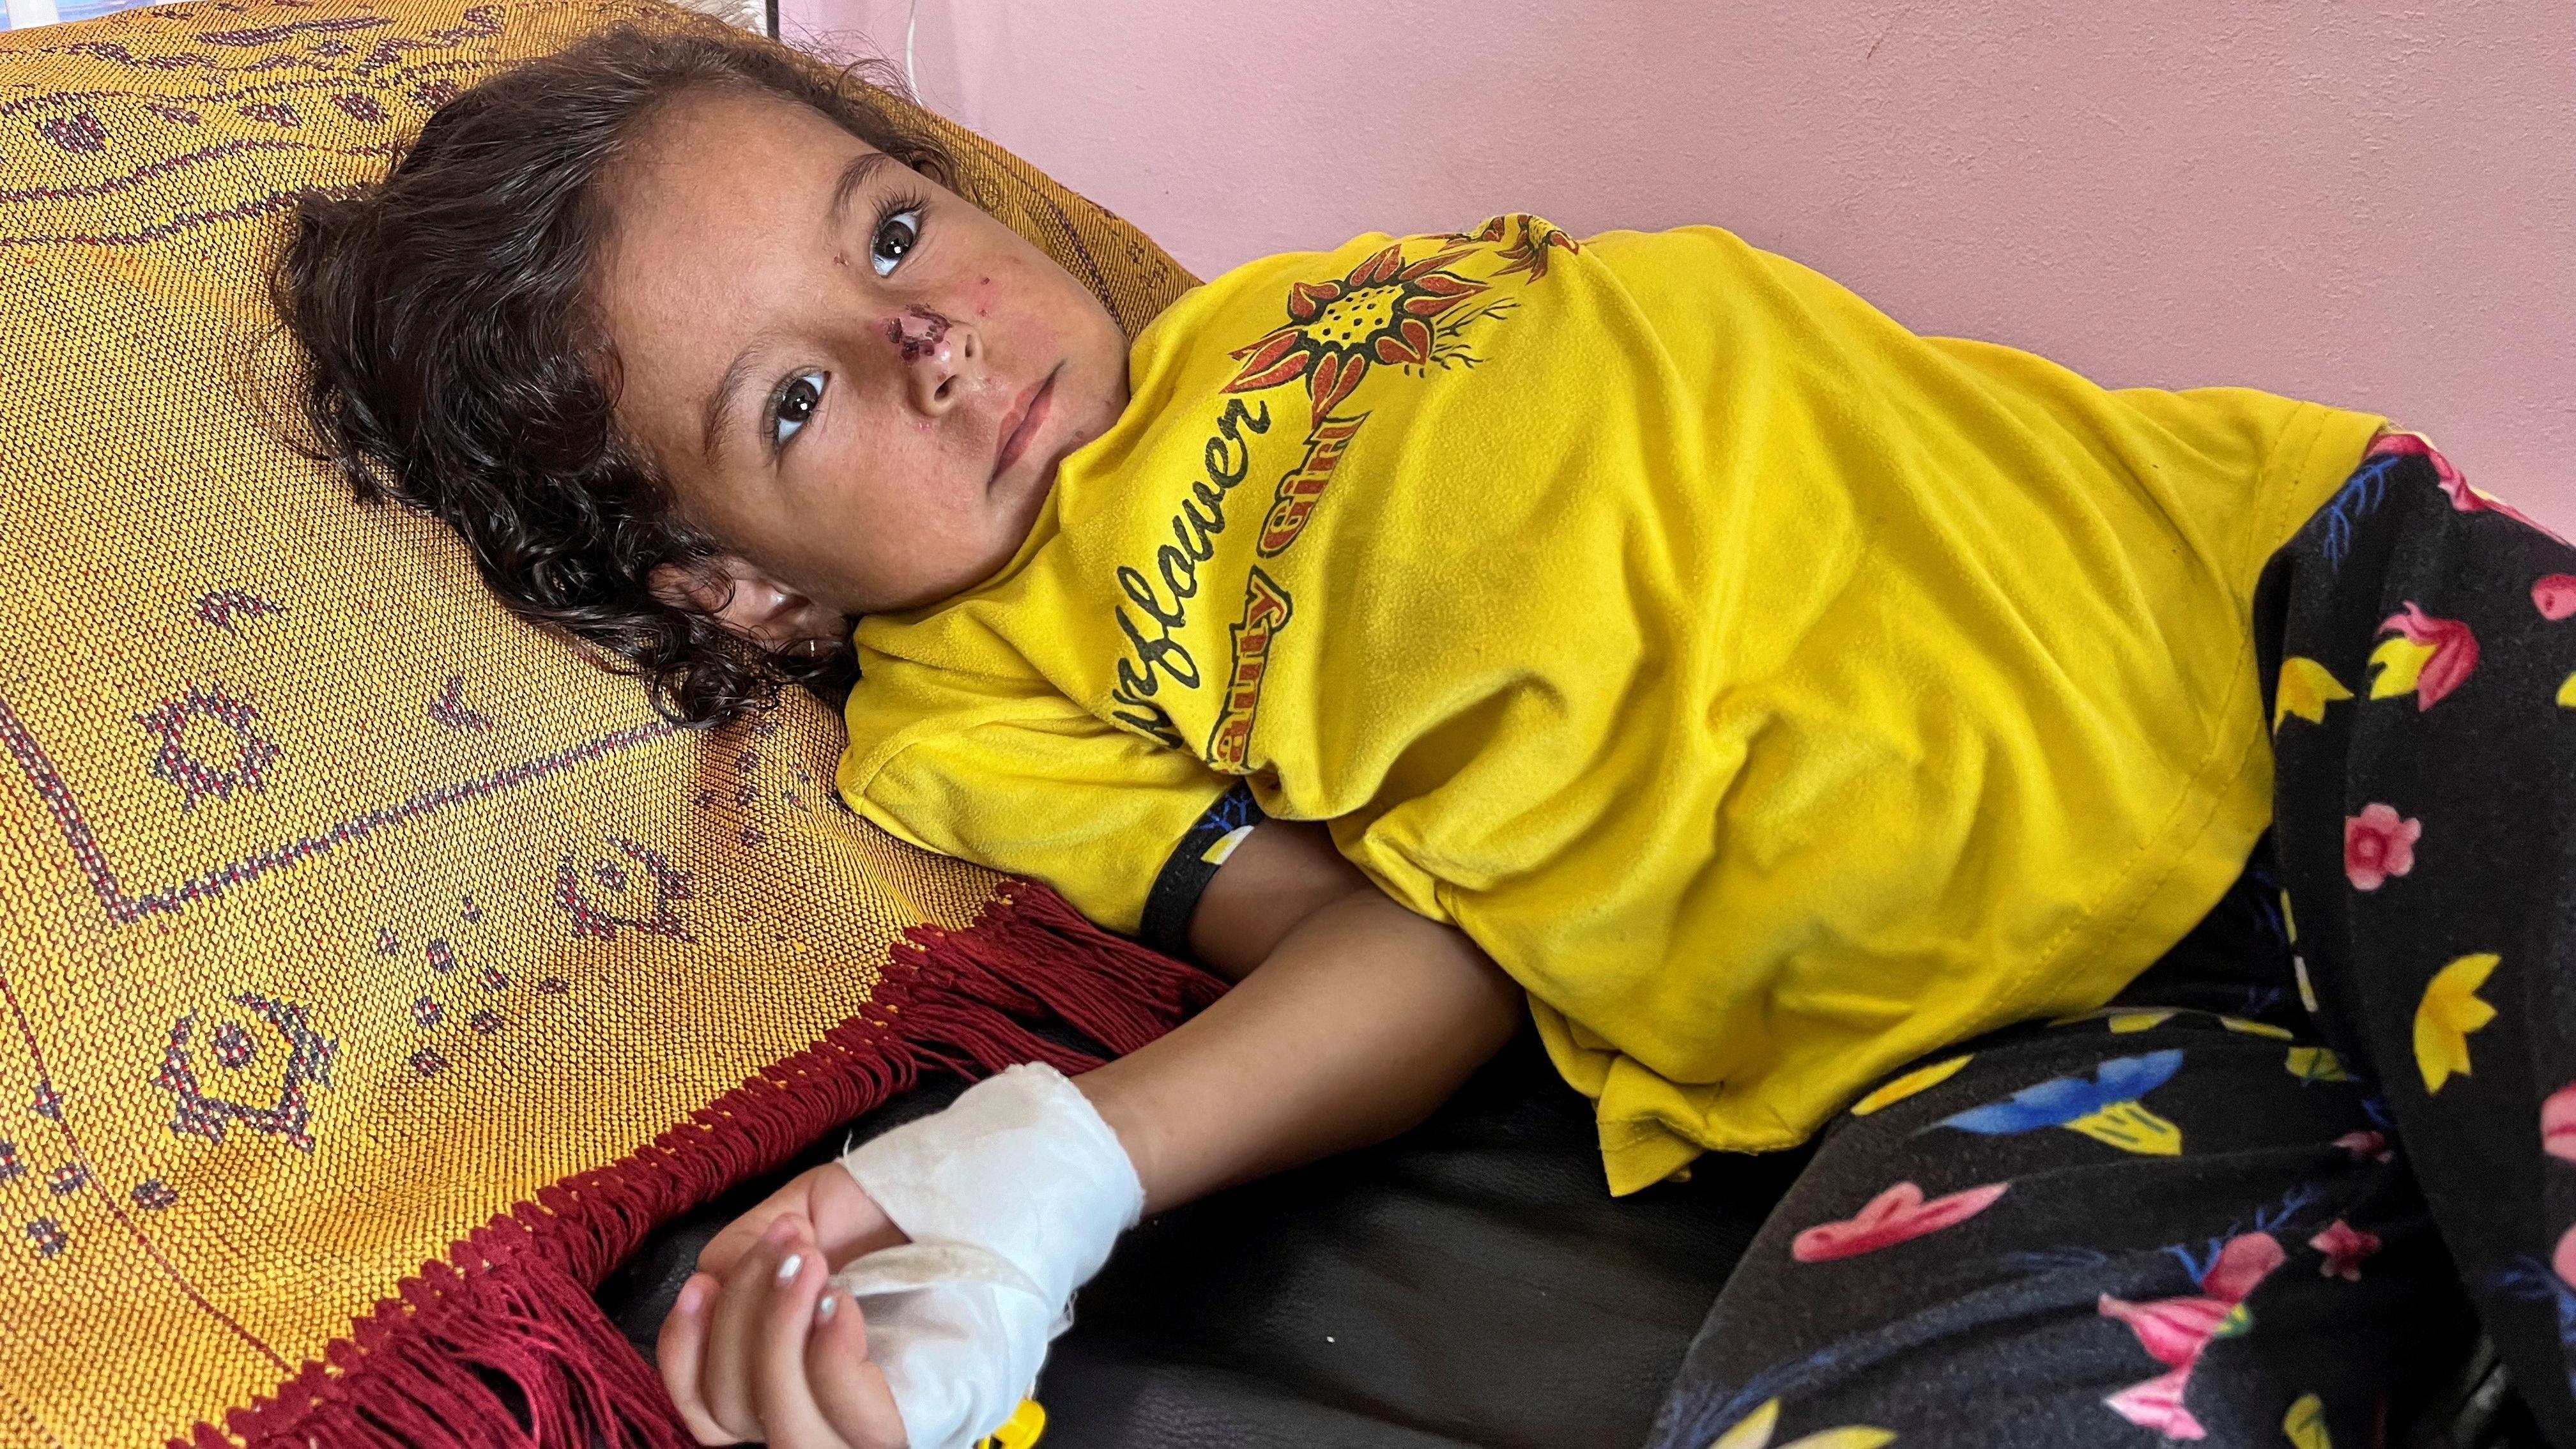 الصحة الفلسطينية تعلن قطاع غزة "منطقة وباء لشلل الأطفال"، وأونروا تقول إن الأمان أصبح "الأغلى والأكثر ندرة" في غزة